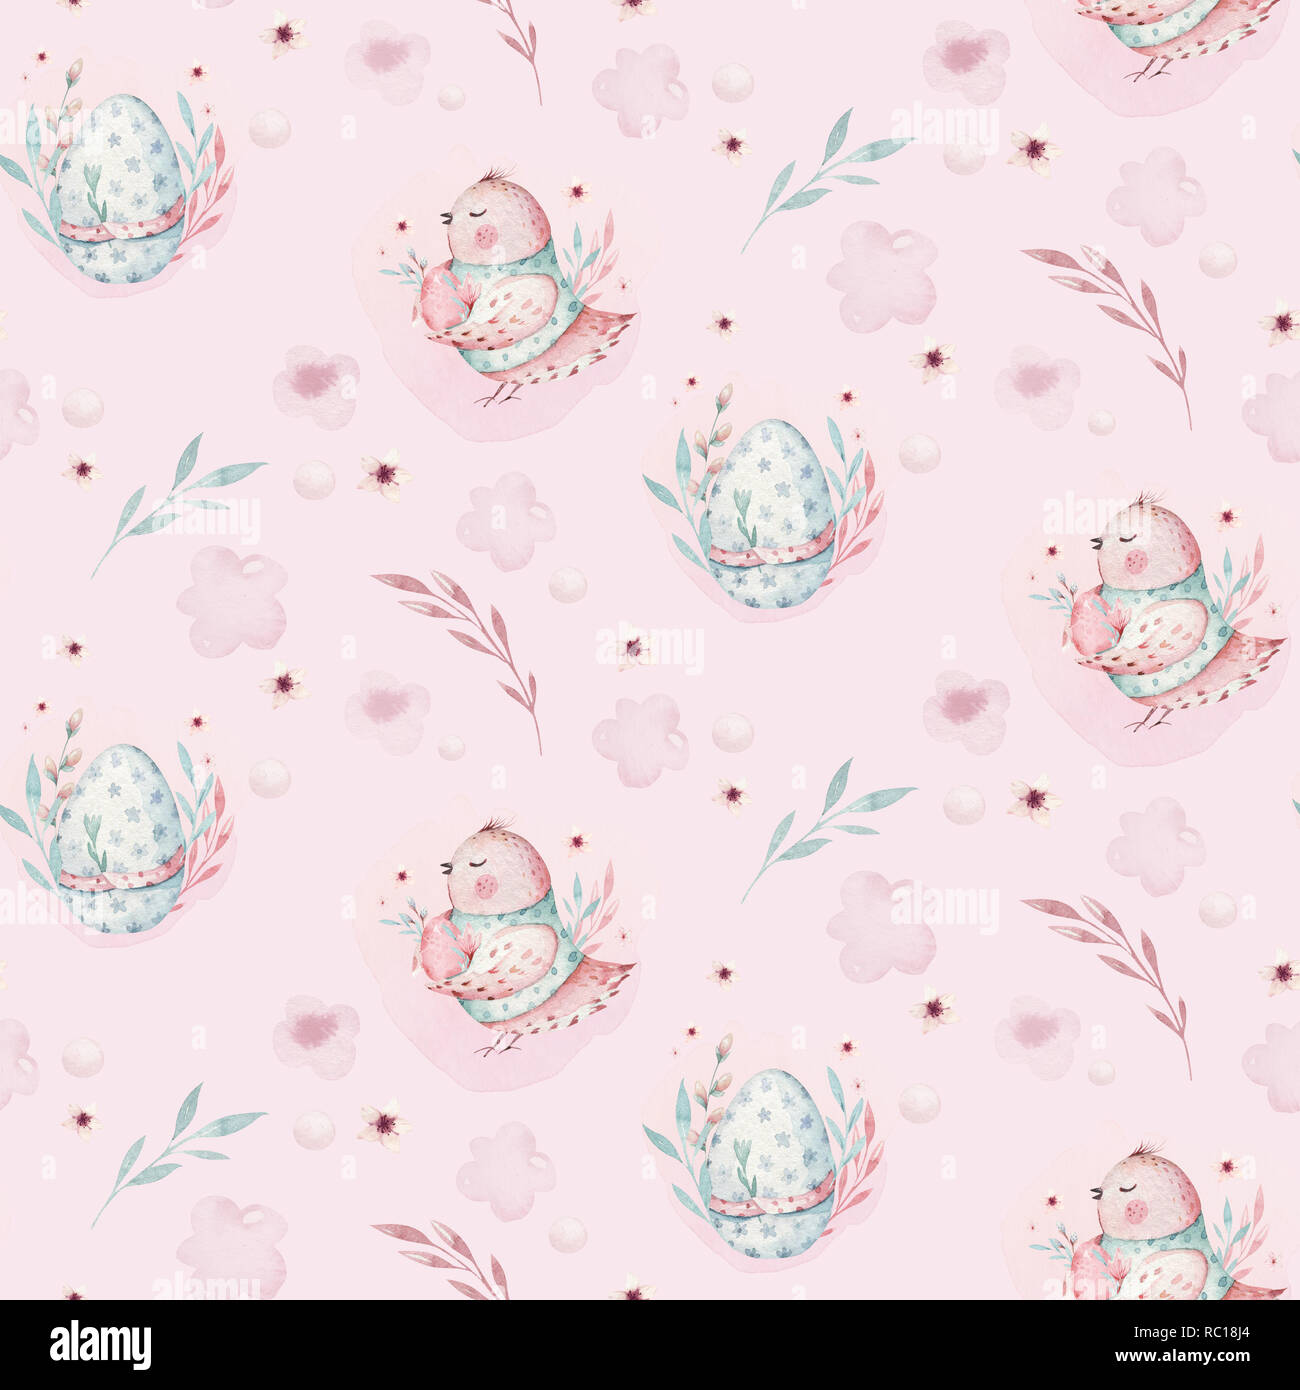 Un printemps aquarelle illustration de l'adorable bébé oiseau de Pâques et les oeufs. Cartoon animal oeuf motif de tissu rose transparent Banque D'Images